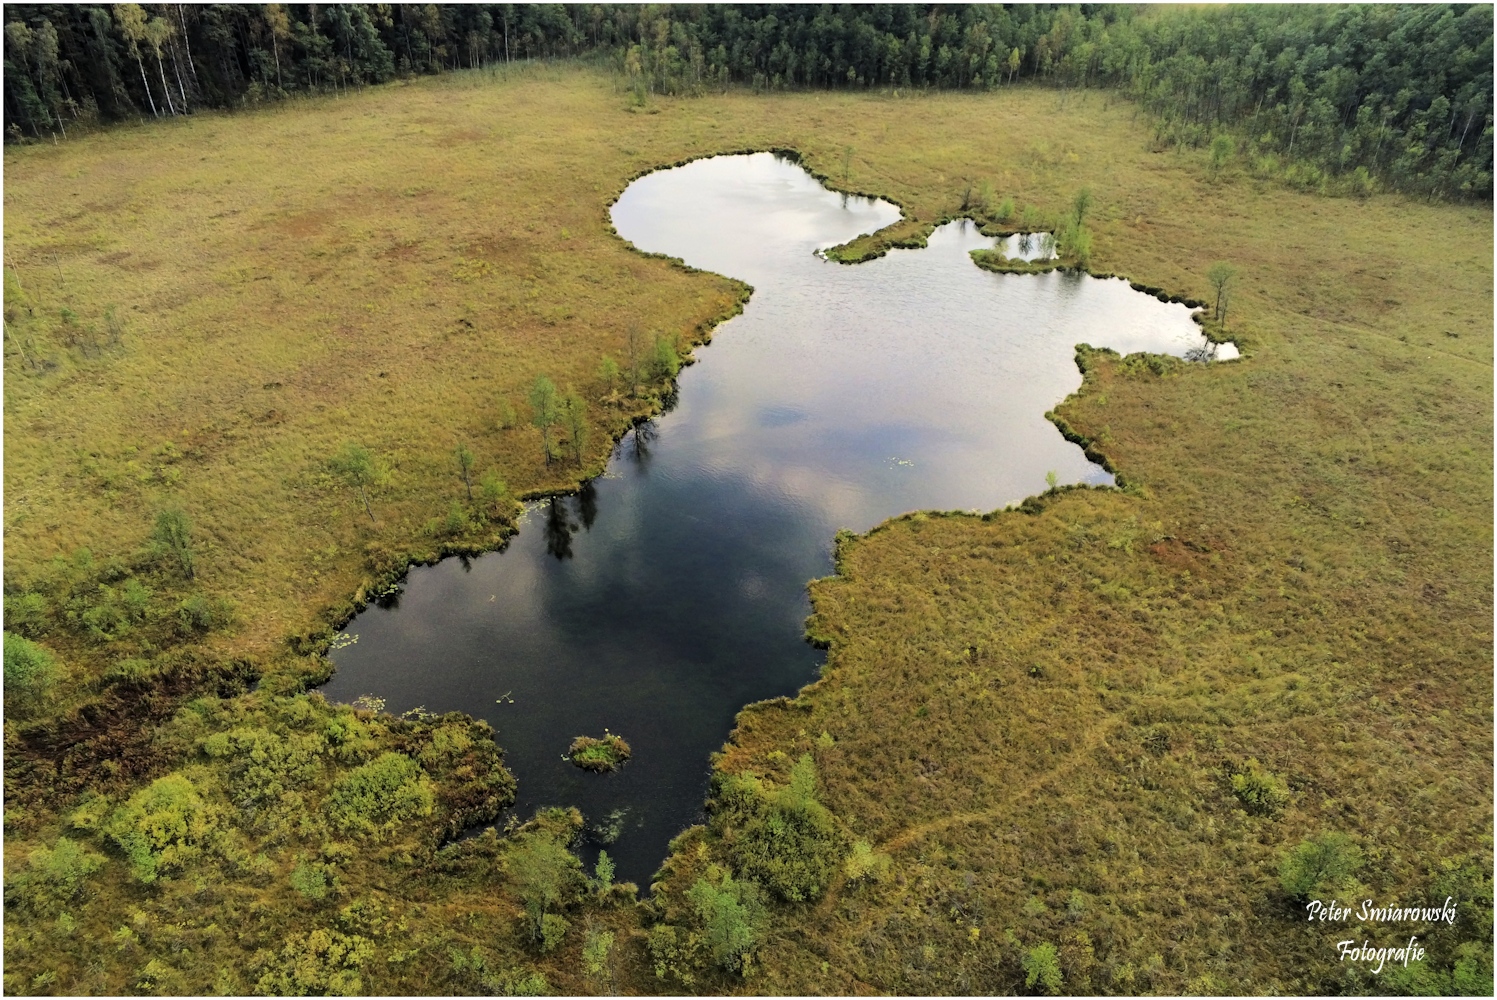 Dystriophischer See in der Sumpflandschaft 